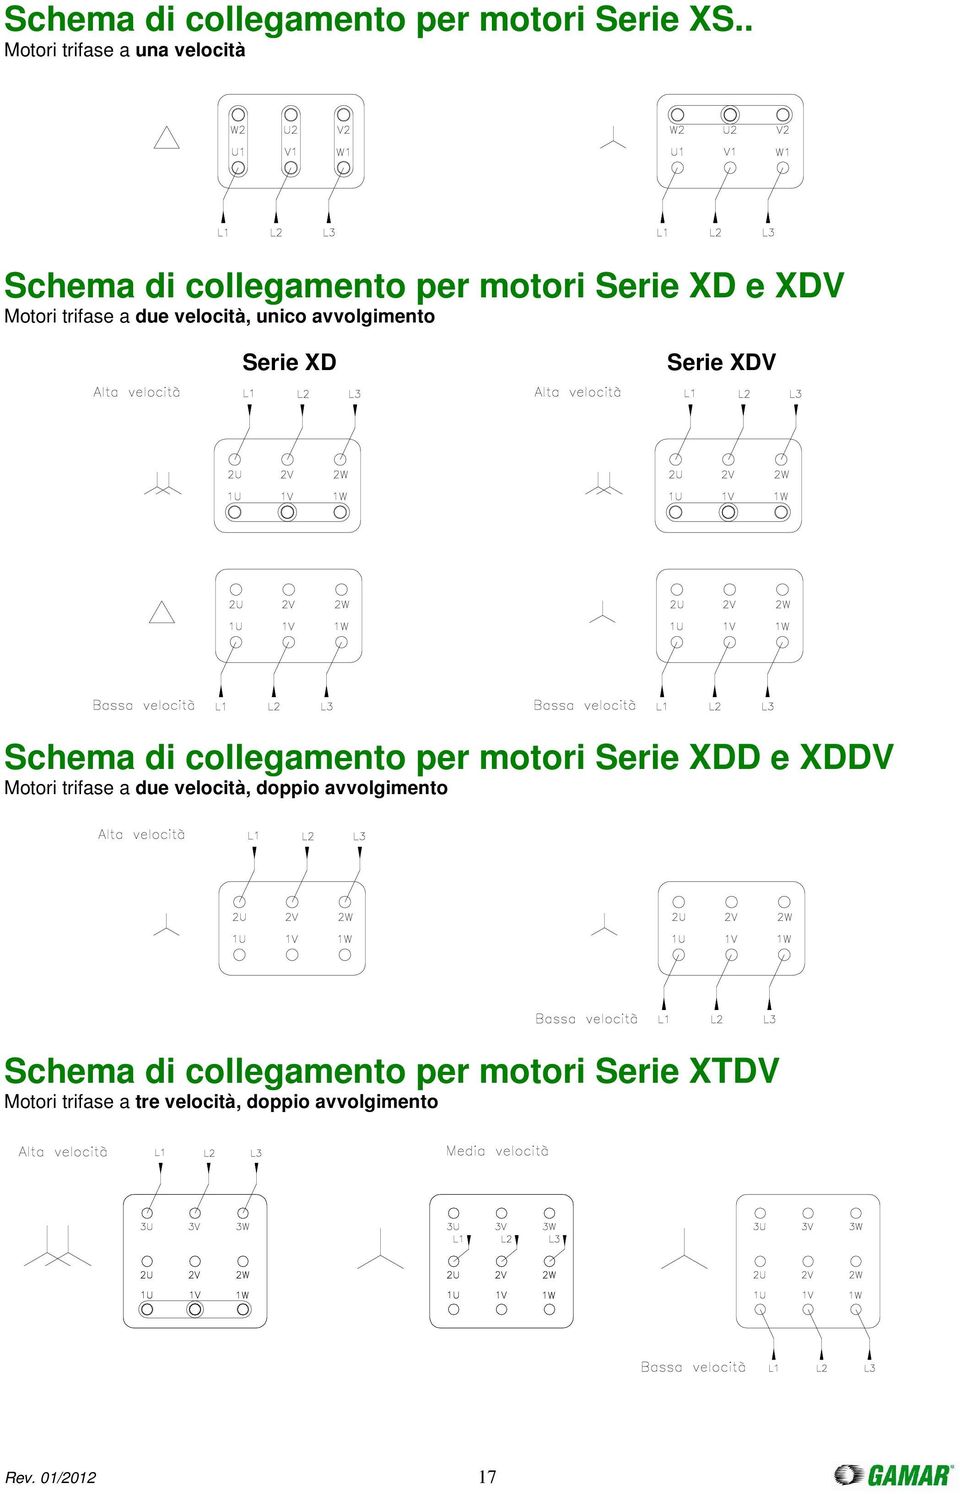 velocità, unico avvolgimento Serie XD Serie XDV Schema di collegamento per motori Serie XDD e XDDV